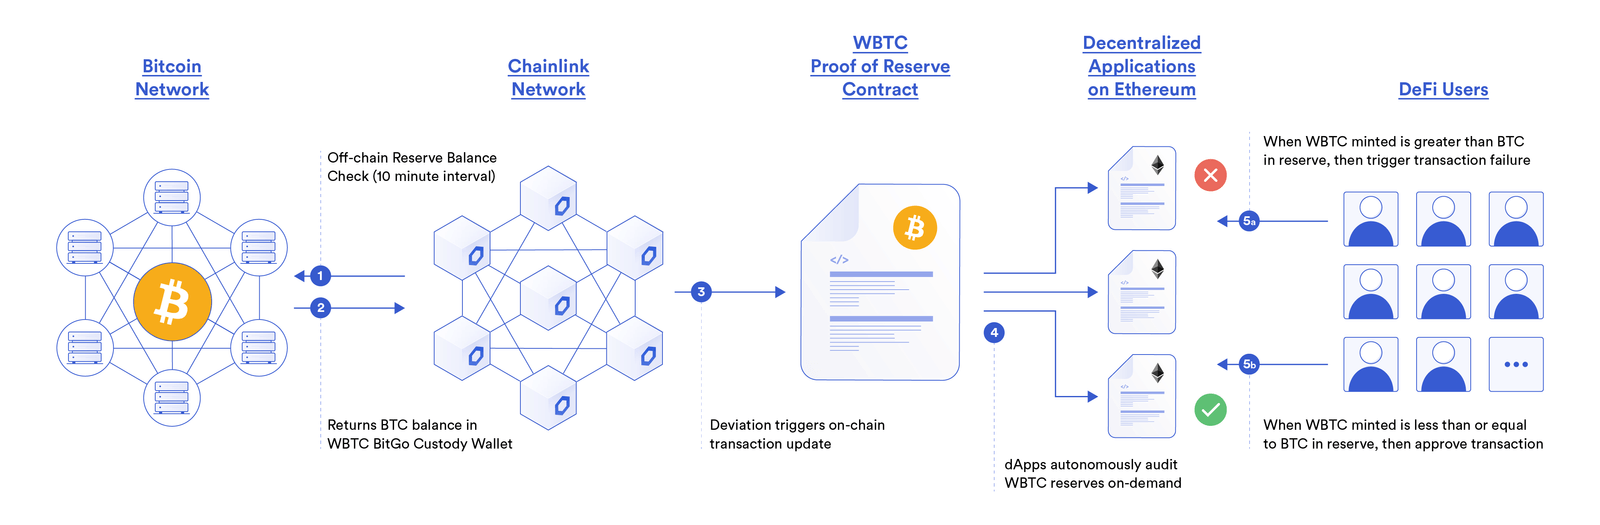 Chainlink Proof of Reserve cung cấp bằng chứng hợp đồng thông minh về tài sản thế chấp Bitcoin hỗ trợ BTC bọc của BitGo (WBTC)